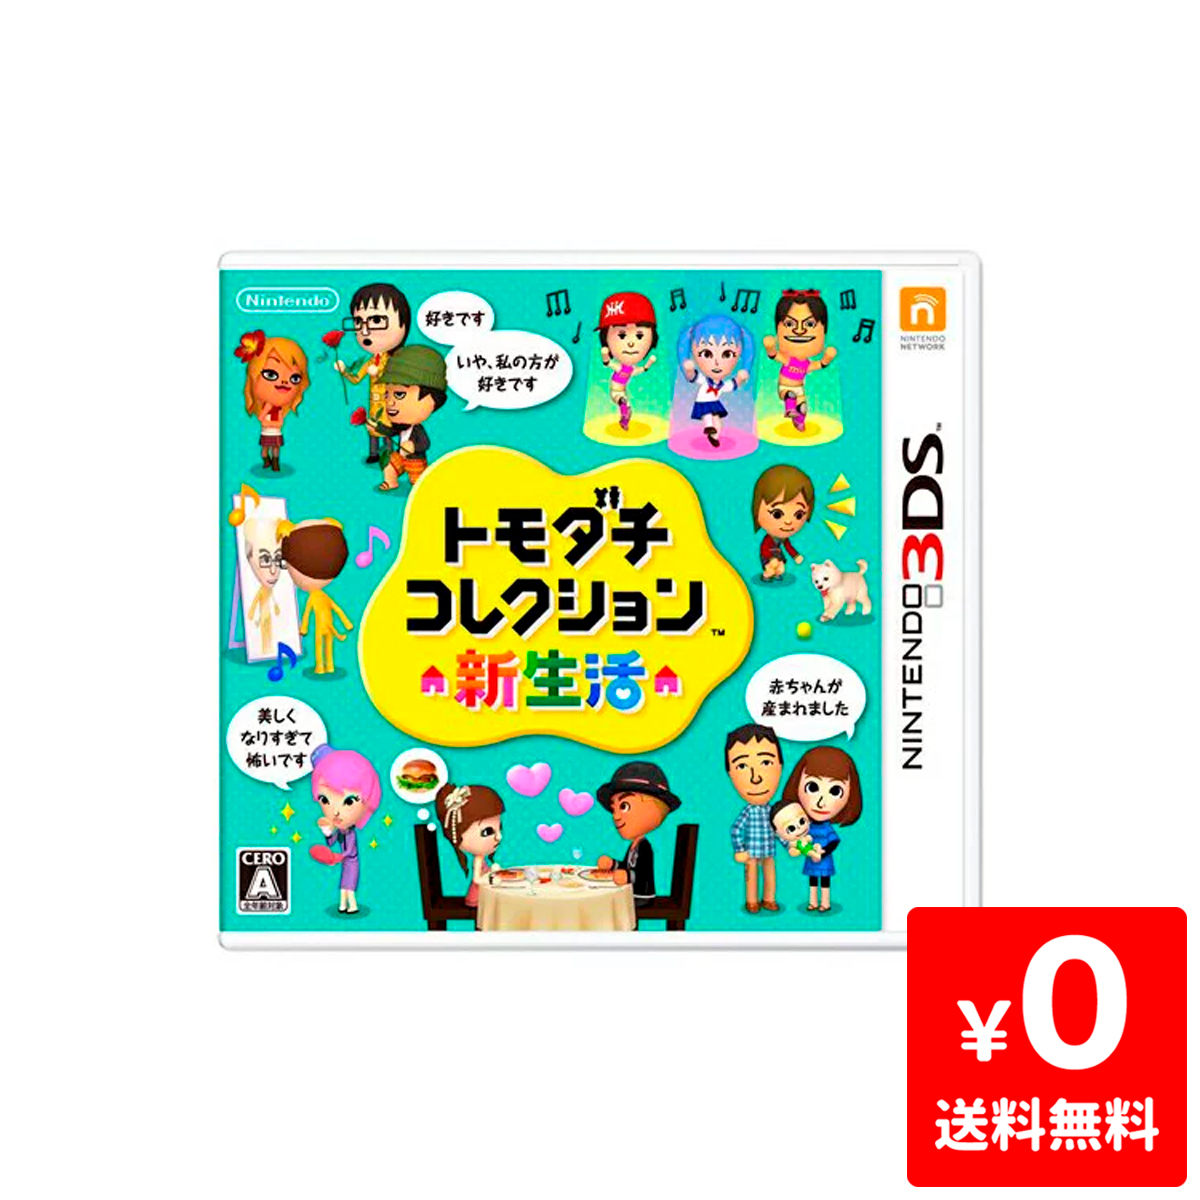 楽天市場 3ds トモダチコレクション 新生活 ソフト ニンテンドー 任天堂 Nintendo 中古 Iimo リユース店